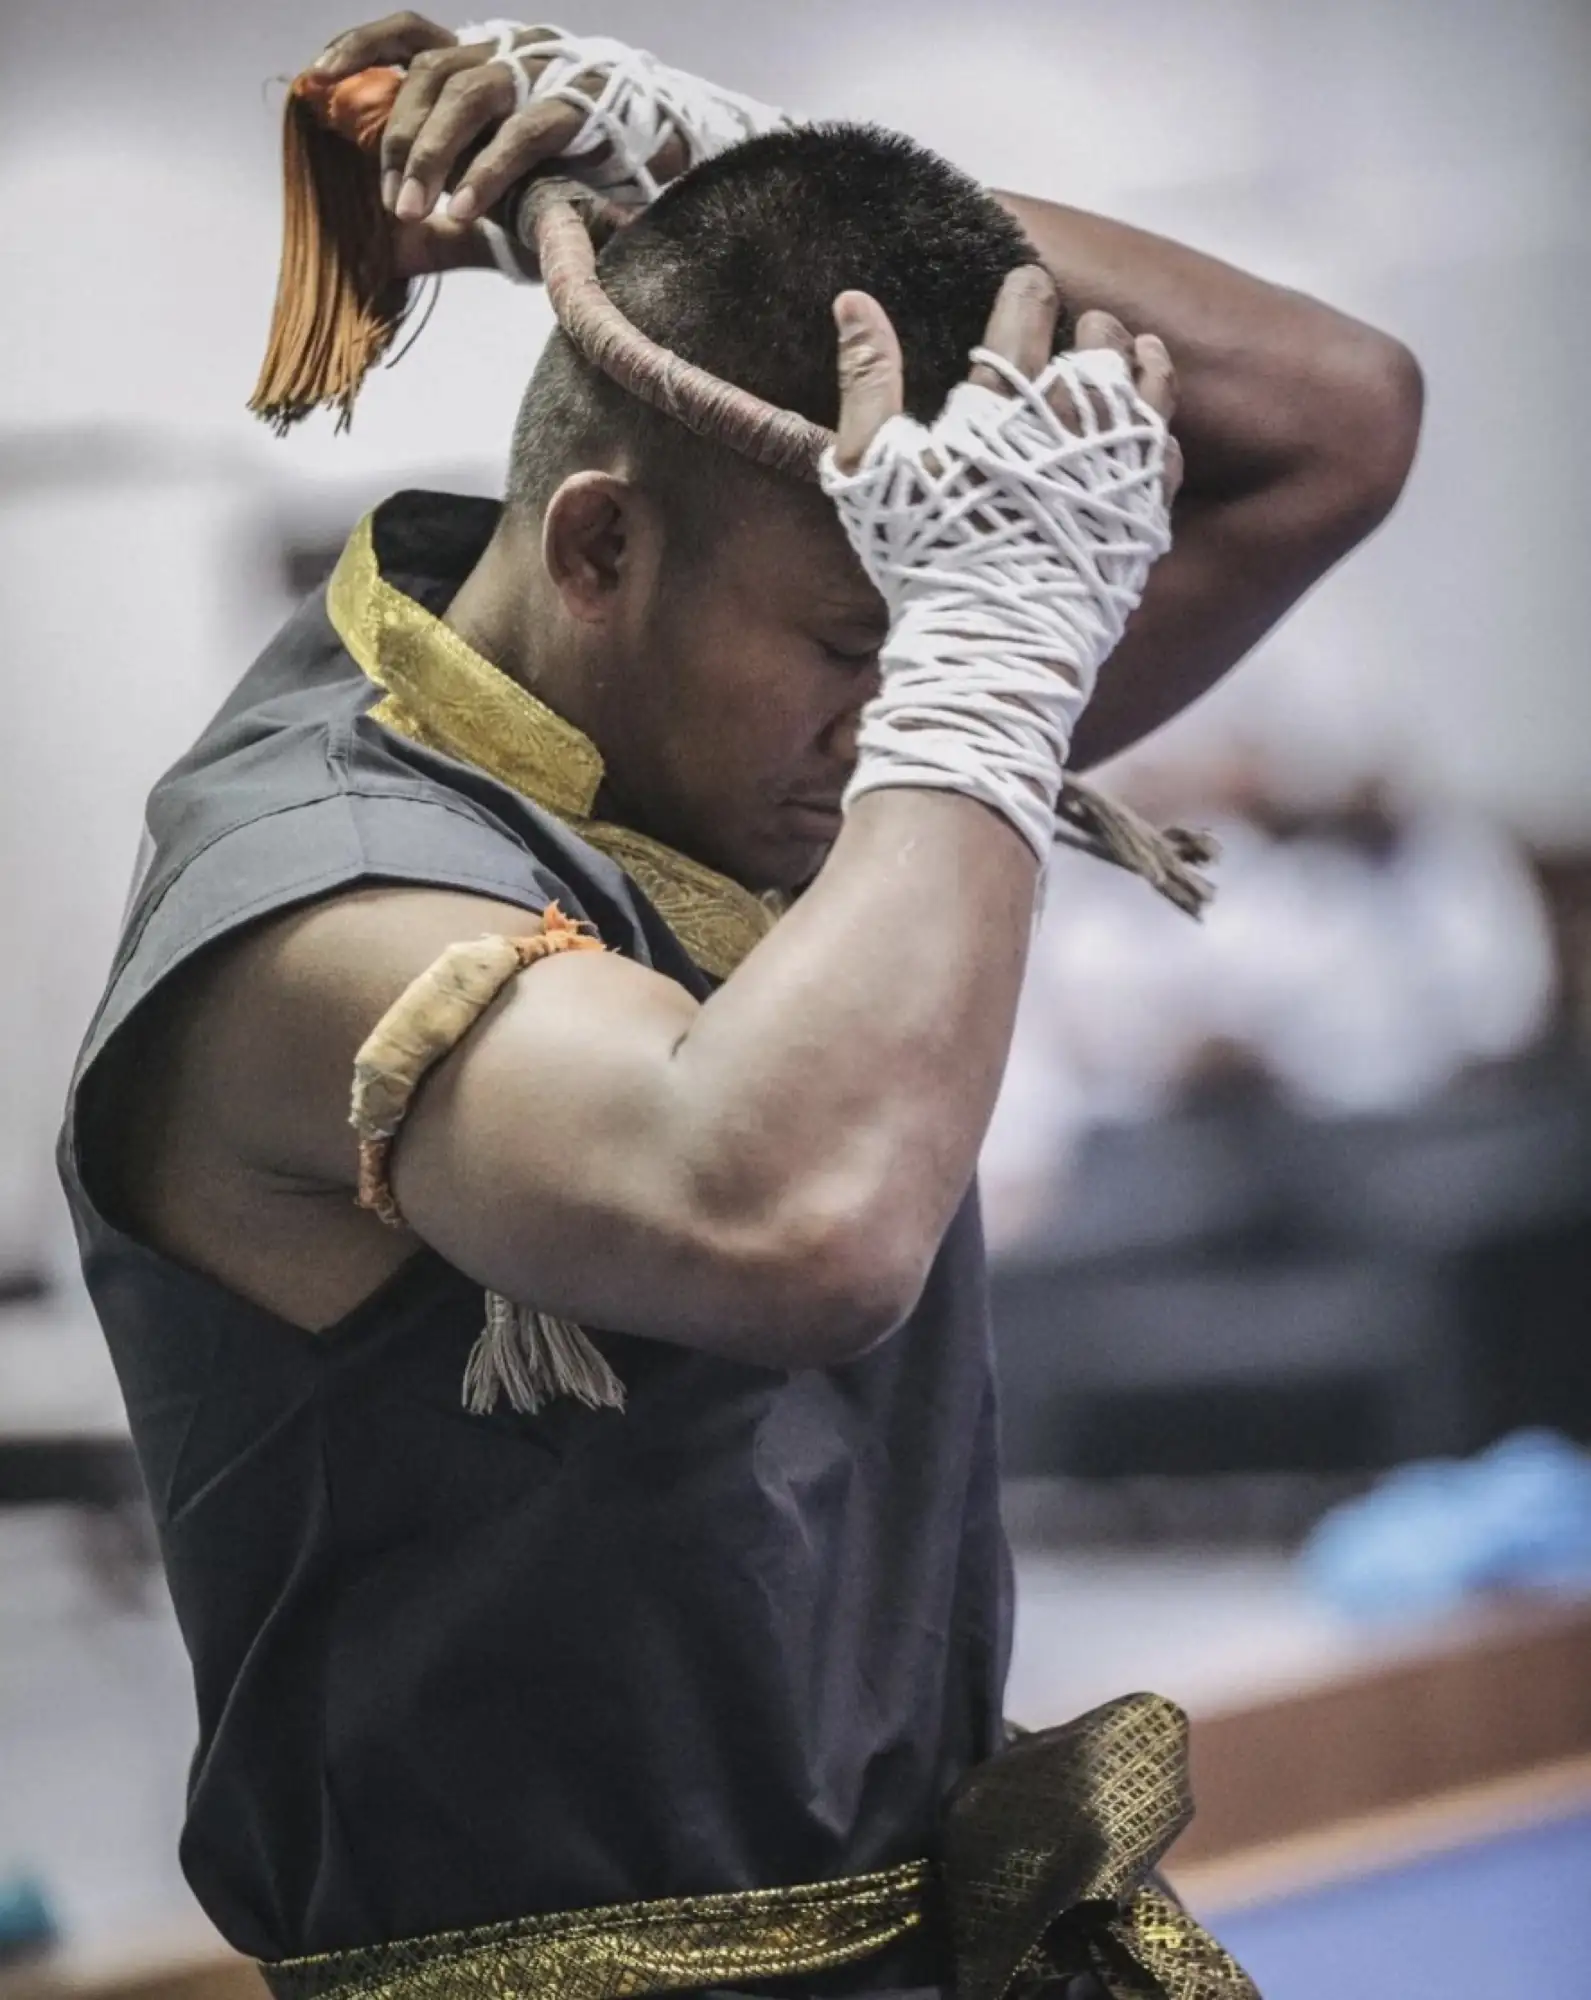 並不是所有人都那麼容易就得到學習泰拳的機會。（圖片來源：postjung）